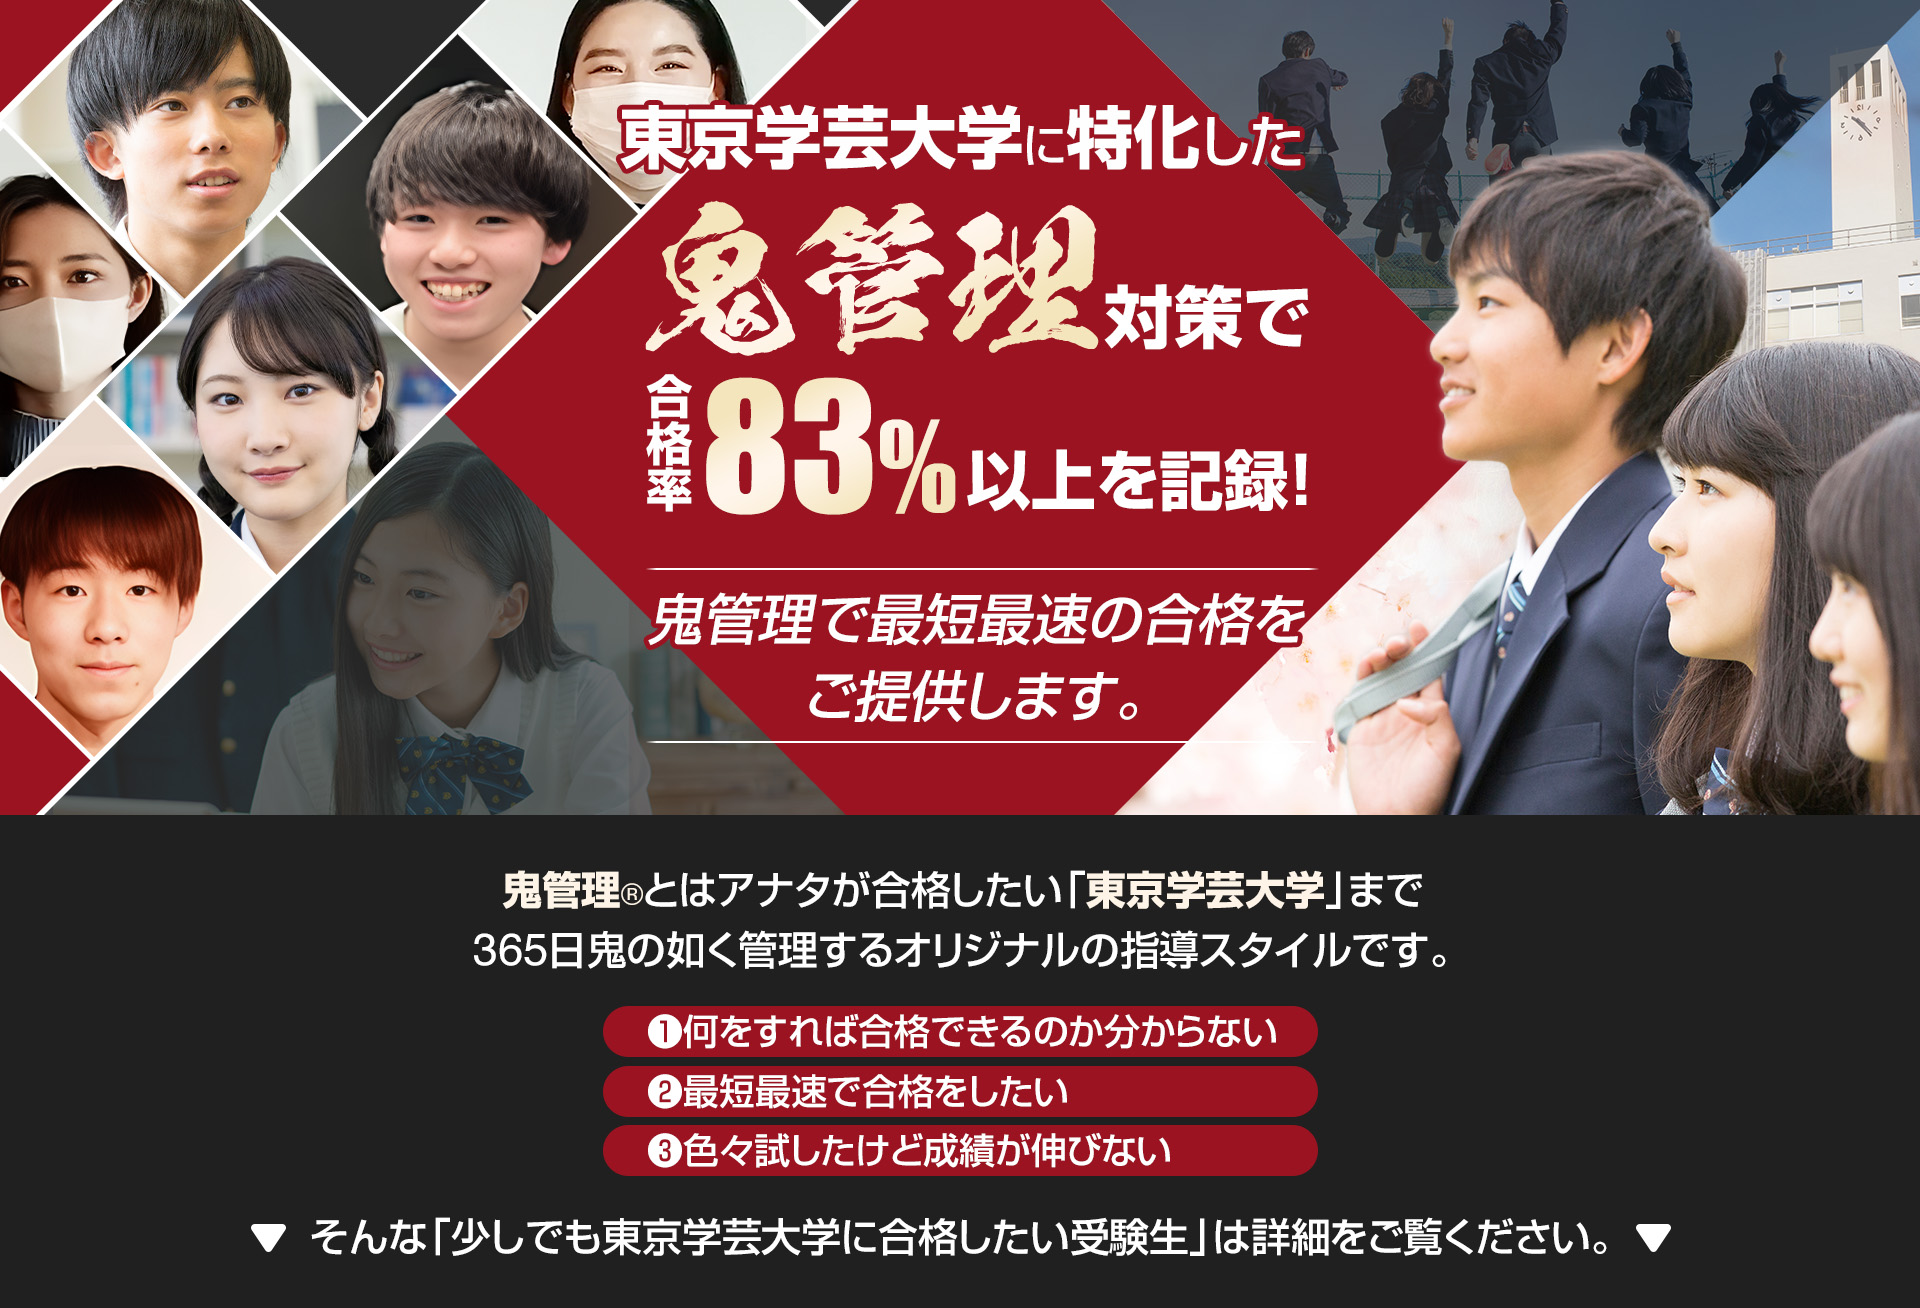 東京学芸大学に特化した鬼管理対策で合格率83％以上を記録。鬼管理でアナタが合格したい東京学芸大学への最短最速の合格を提供します。